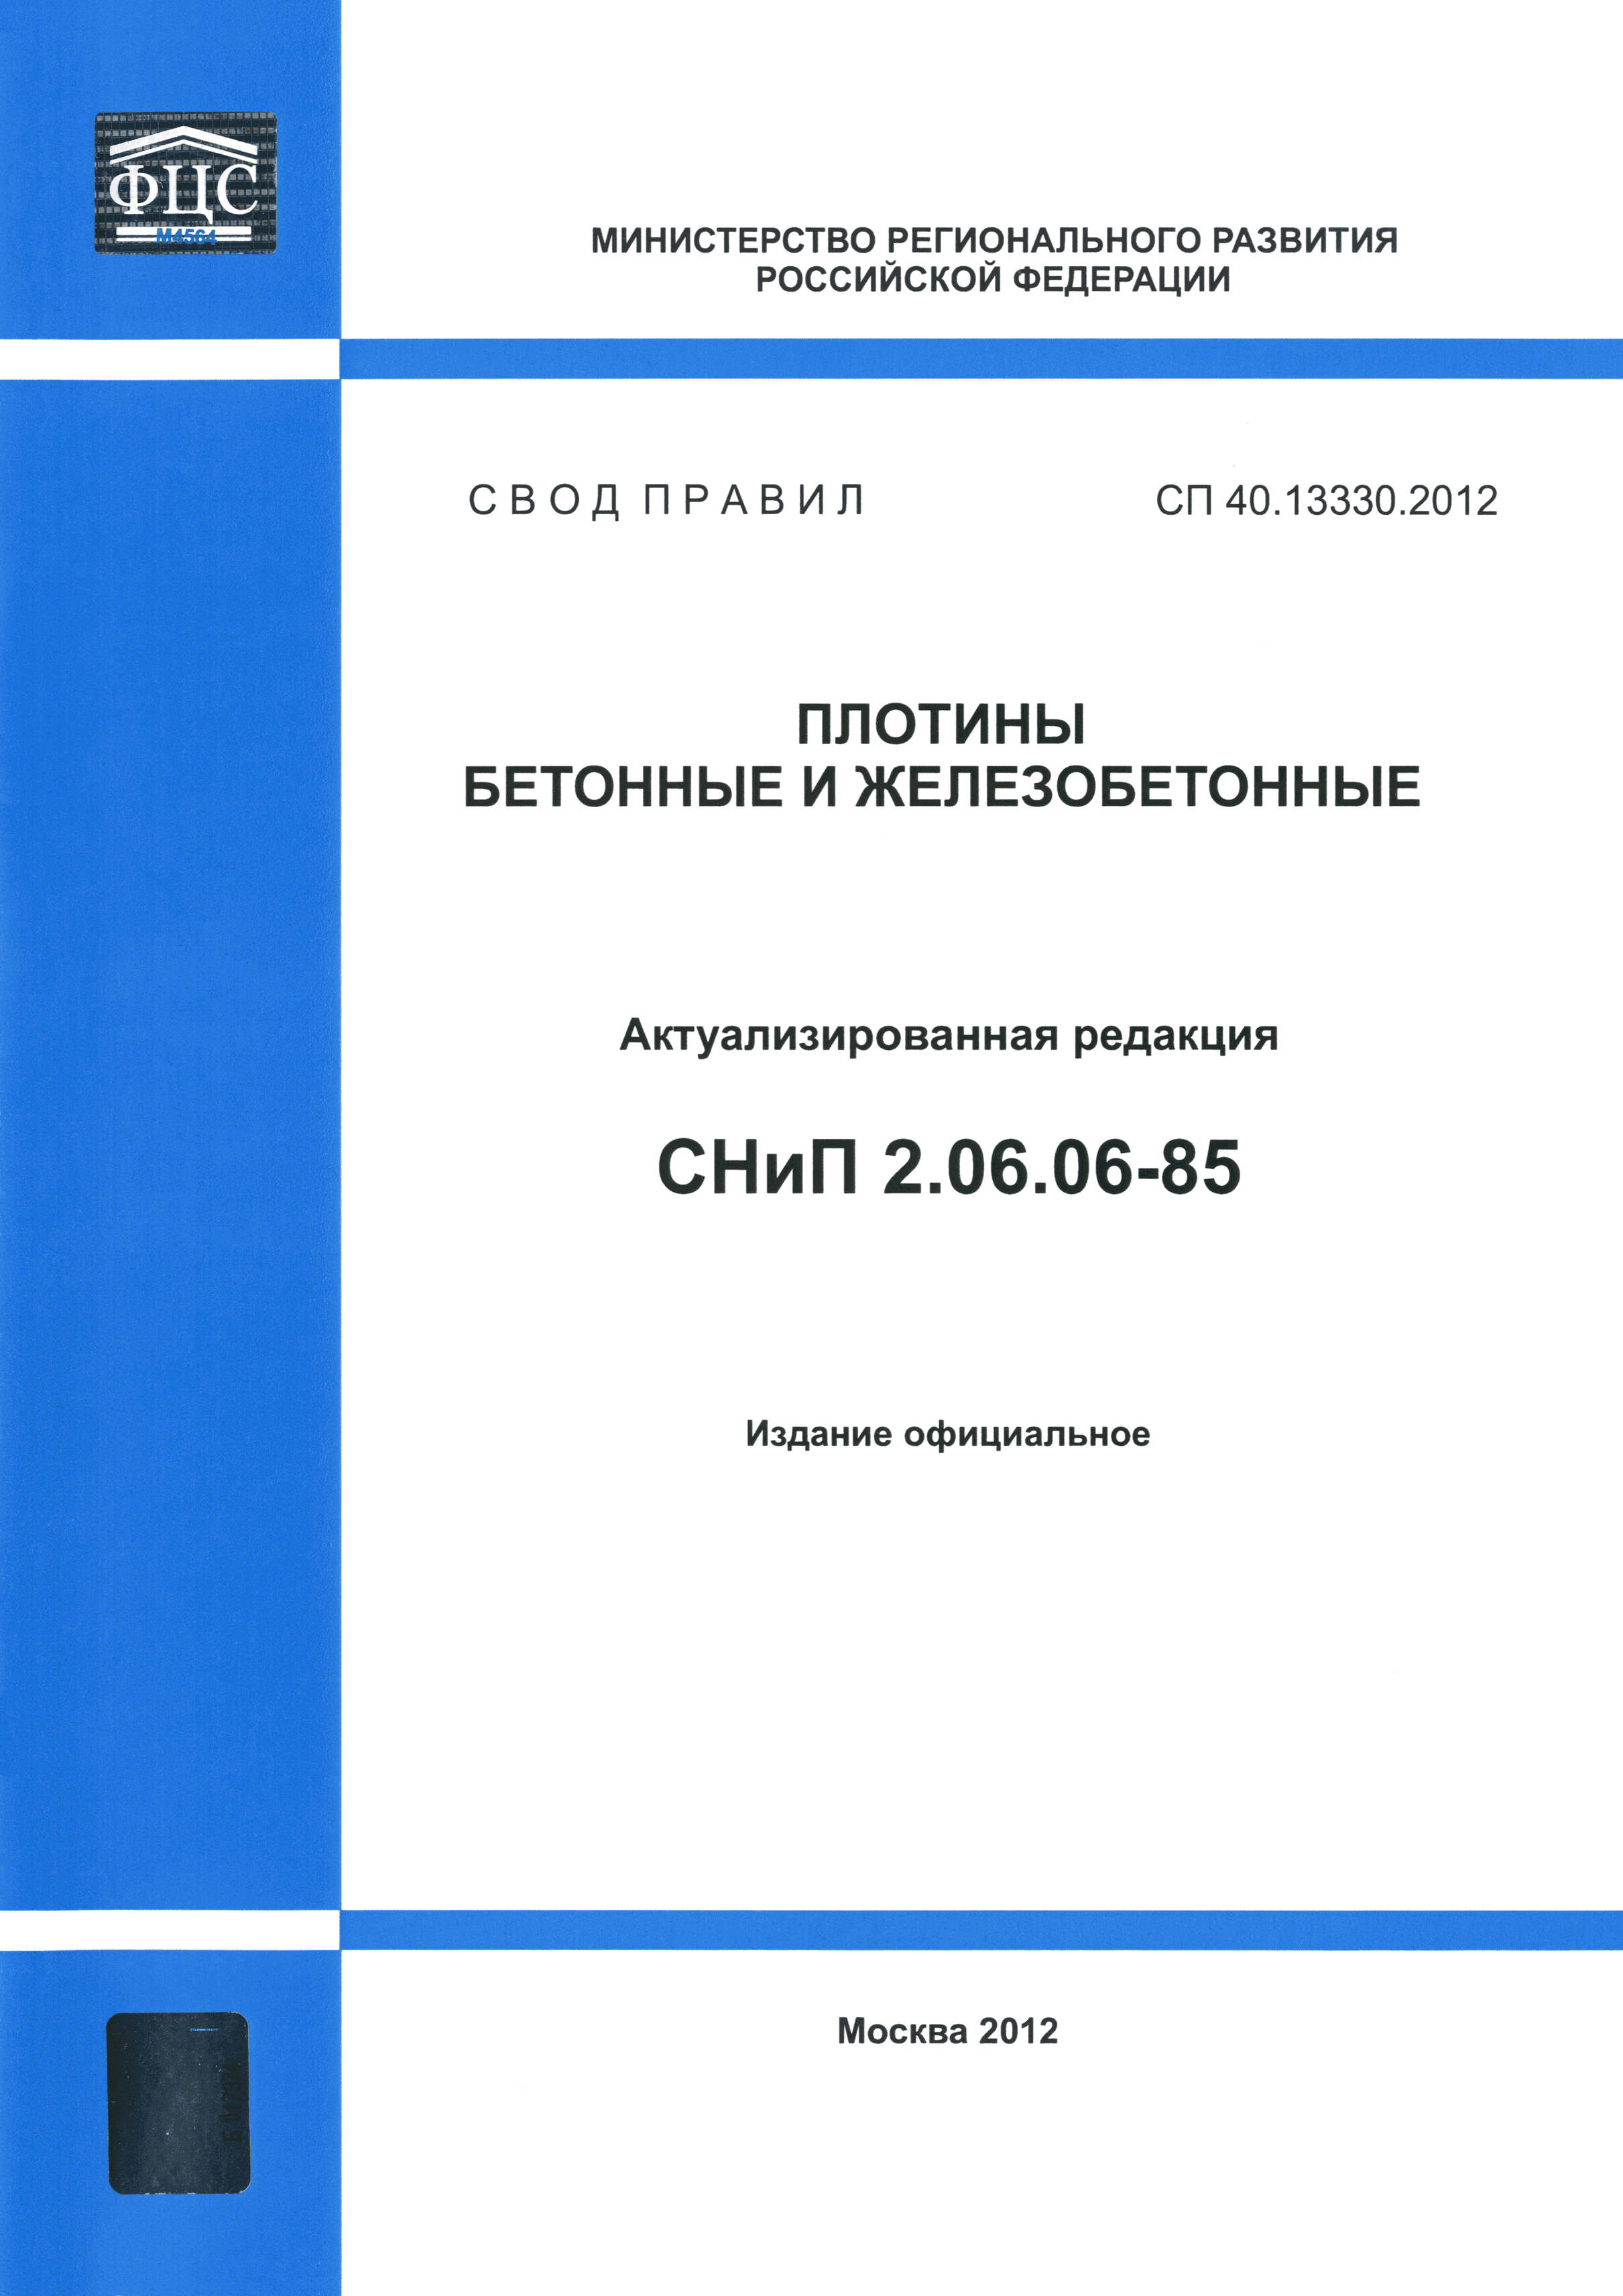 СП 40.13330.2012